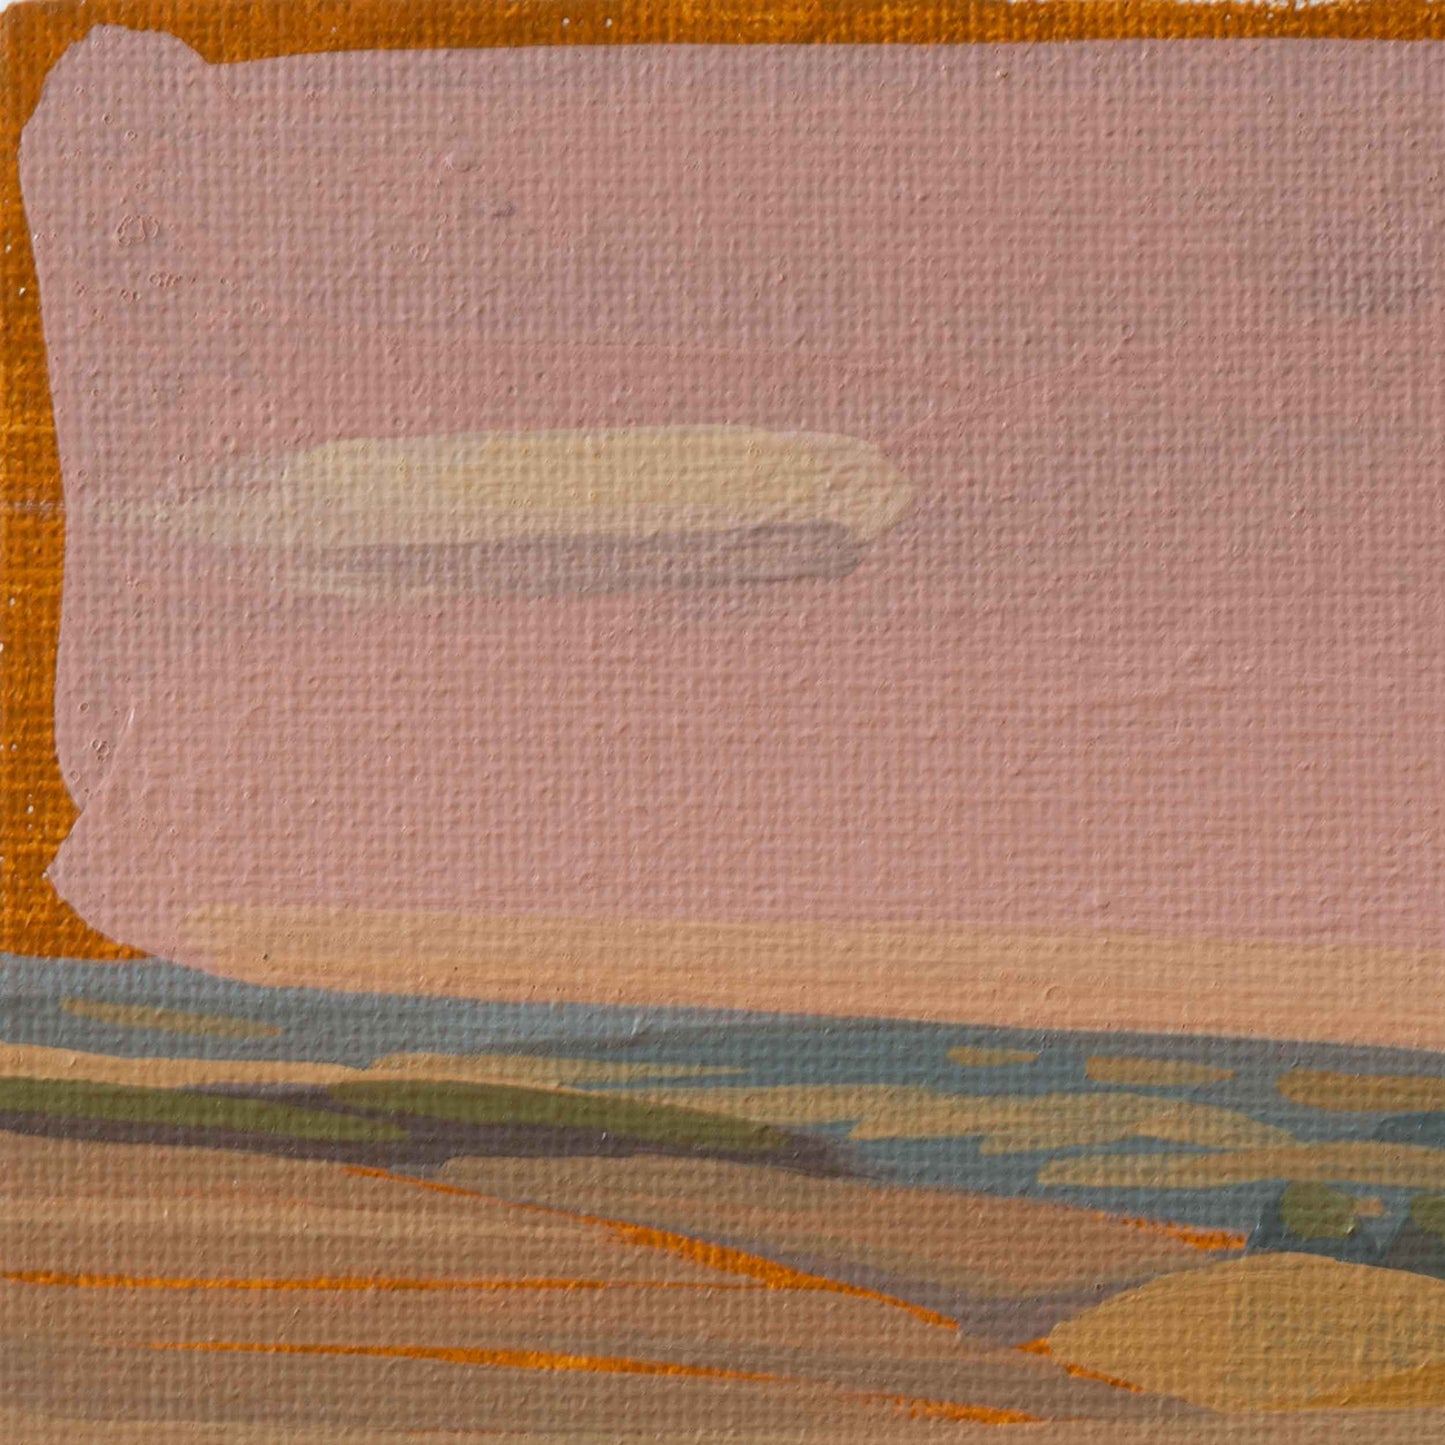 Eifel Landschaft, Unikat, Malerei, handgemaltes Einzelstück, 10x15 cm